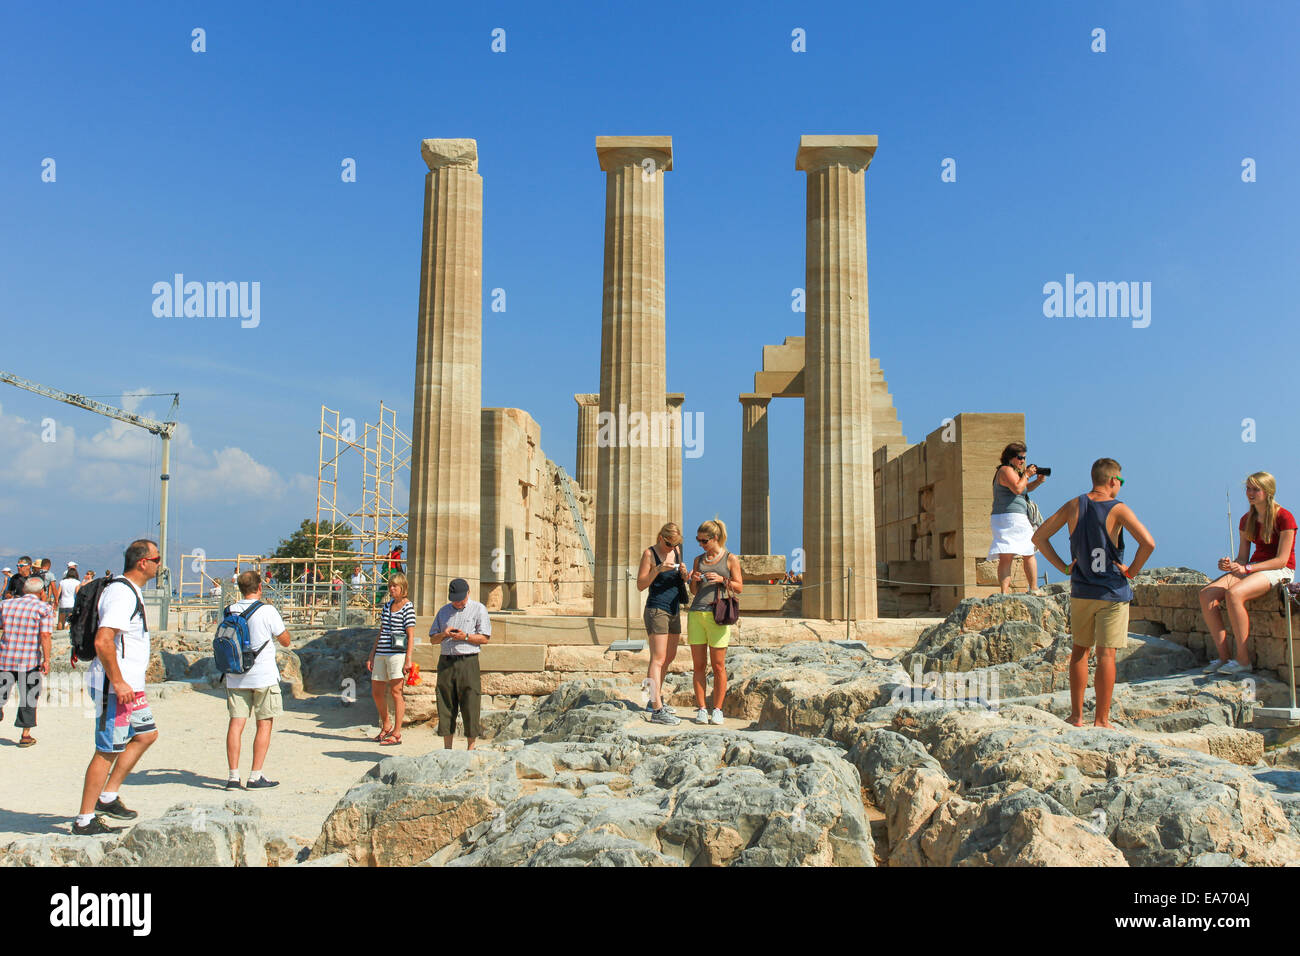 Turisti in cima di Lindos acropoli antica rovine, una cittadella naturale che fu fortificato successivamente dai greci, la ROM Foto Stock